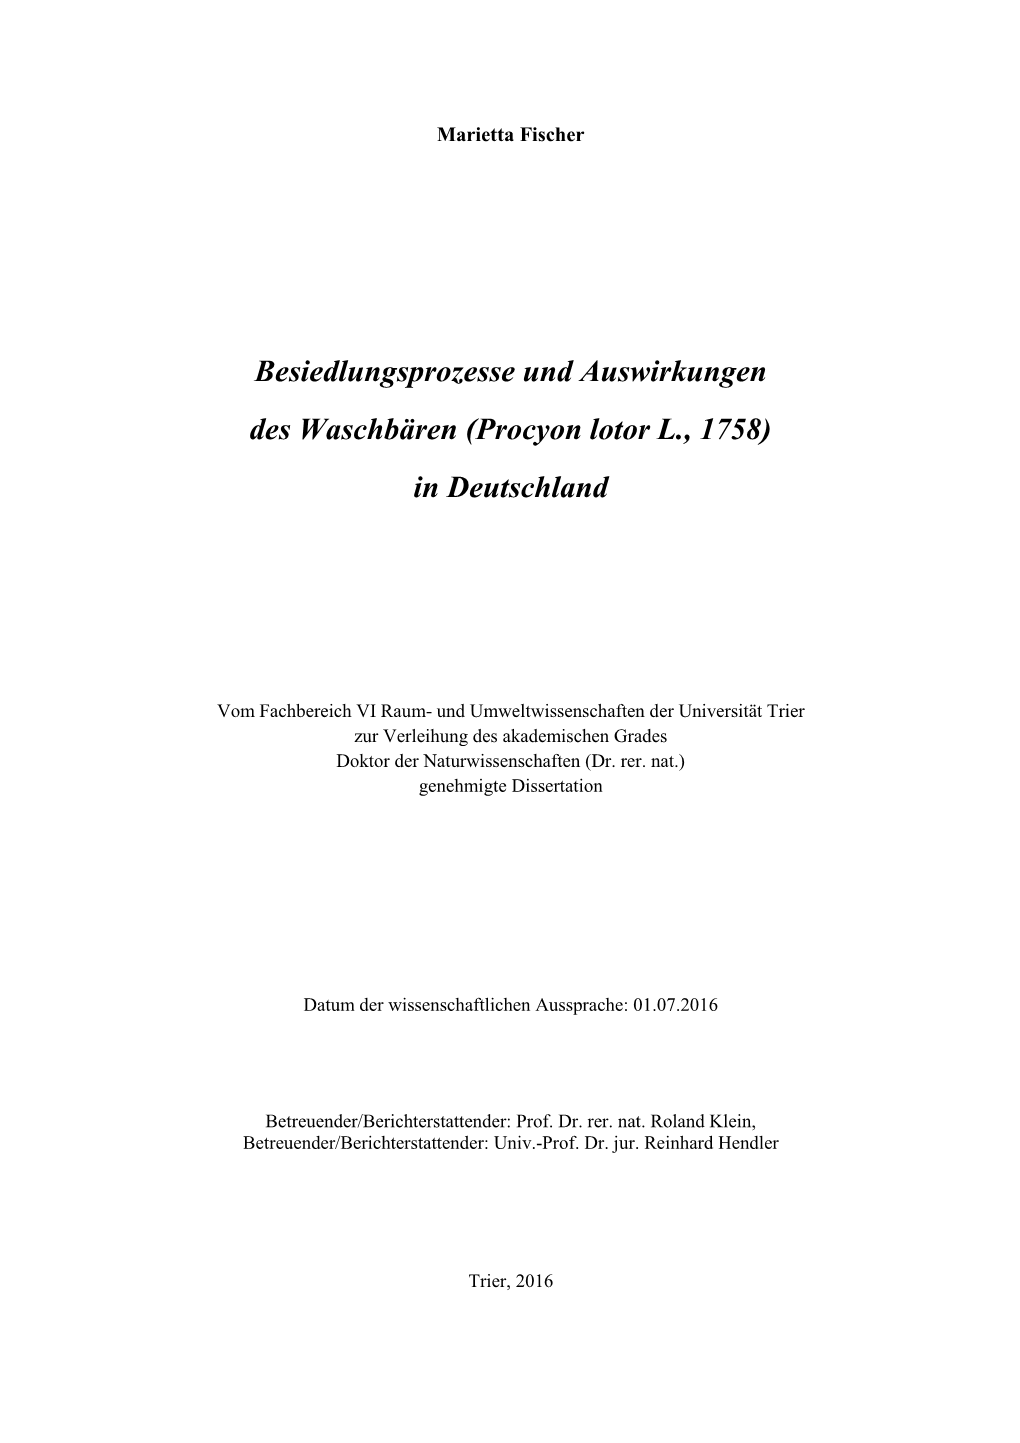 Besiedlungsprozesse Und Auswirkungen Des Waschbären (Procyon Lotor L., 1758) in Deutschland